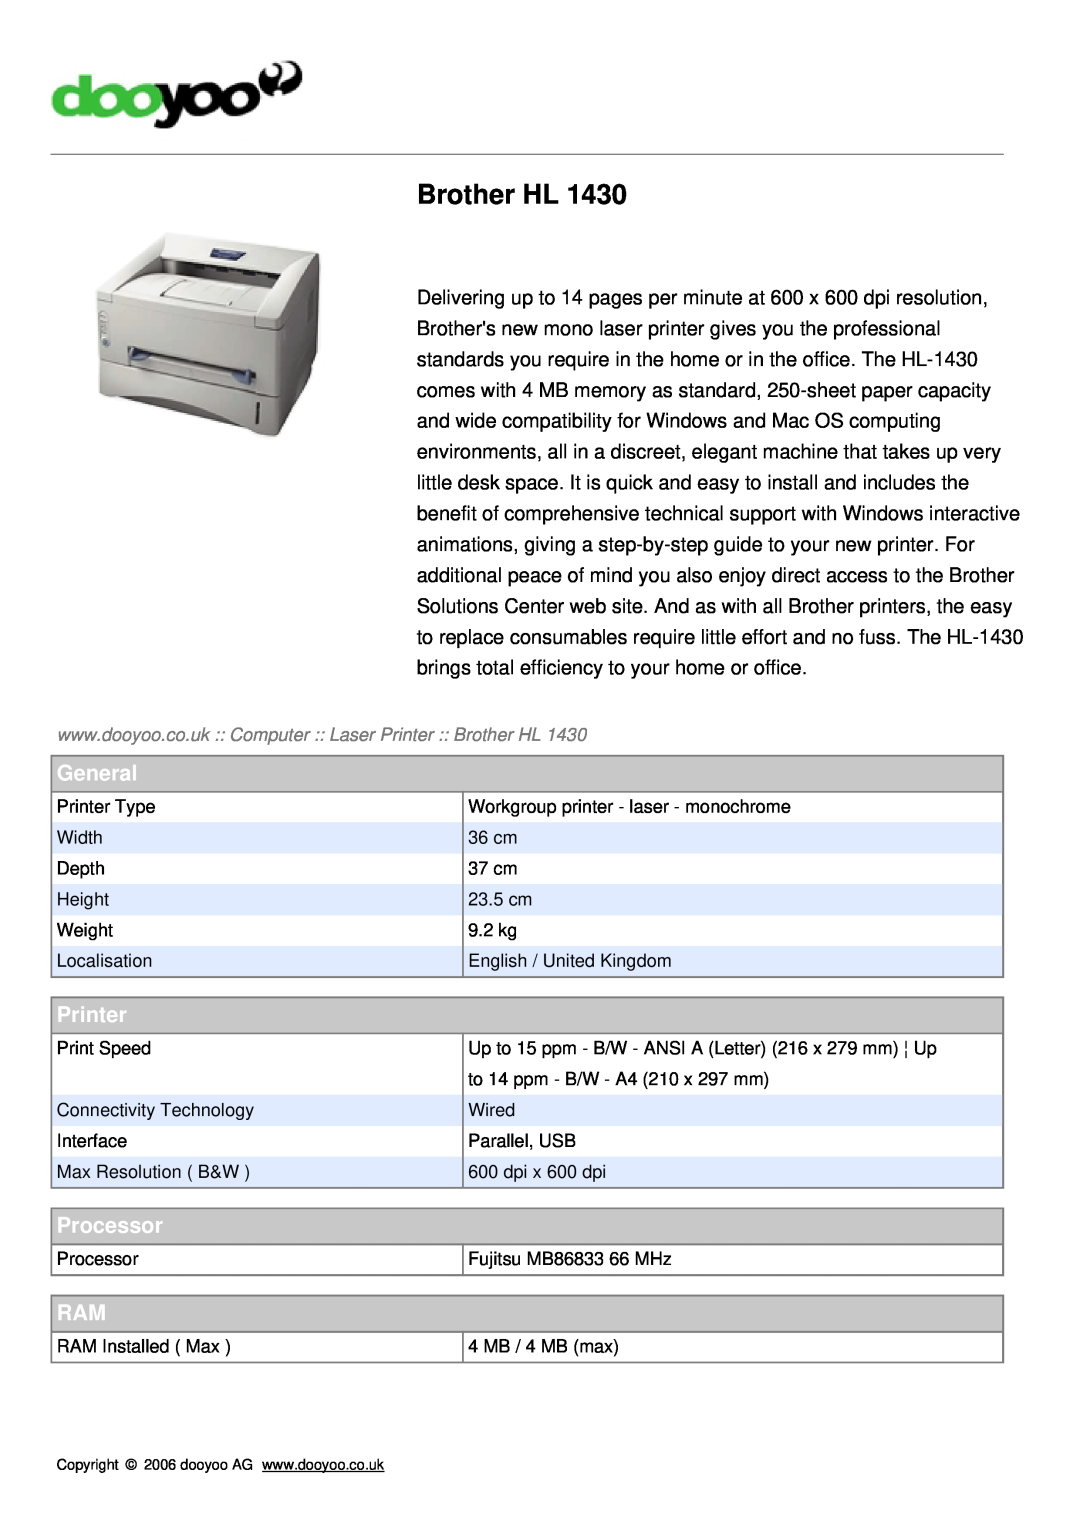 Brother HL-1430 manual General, Printer, Processor, Brother HL 